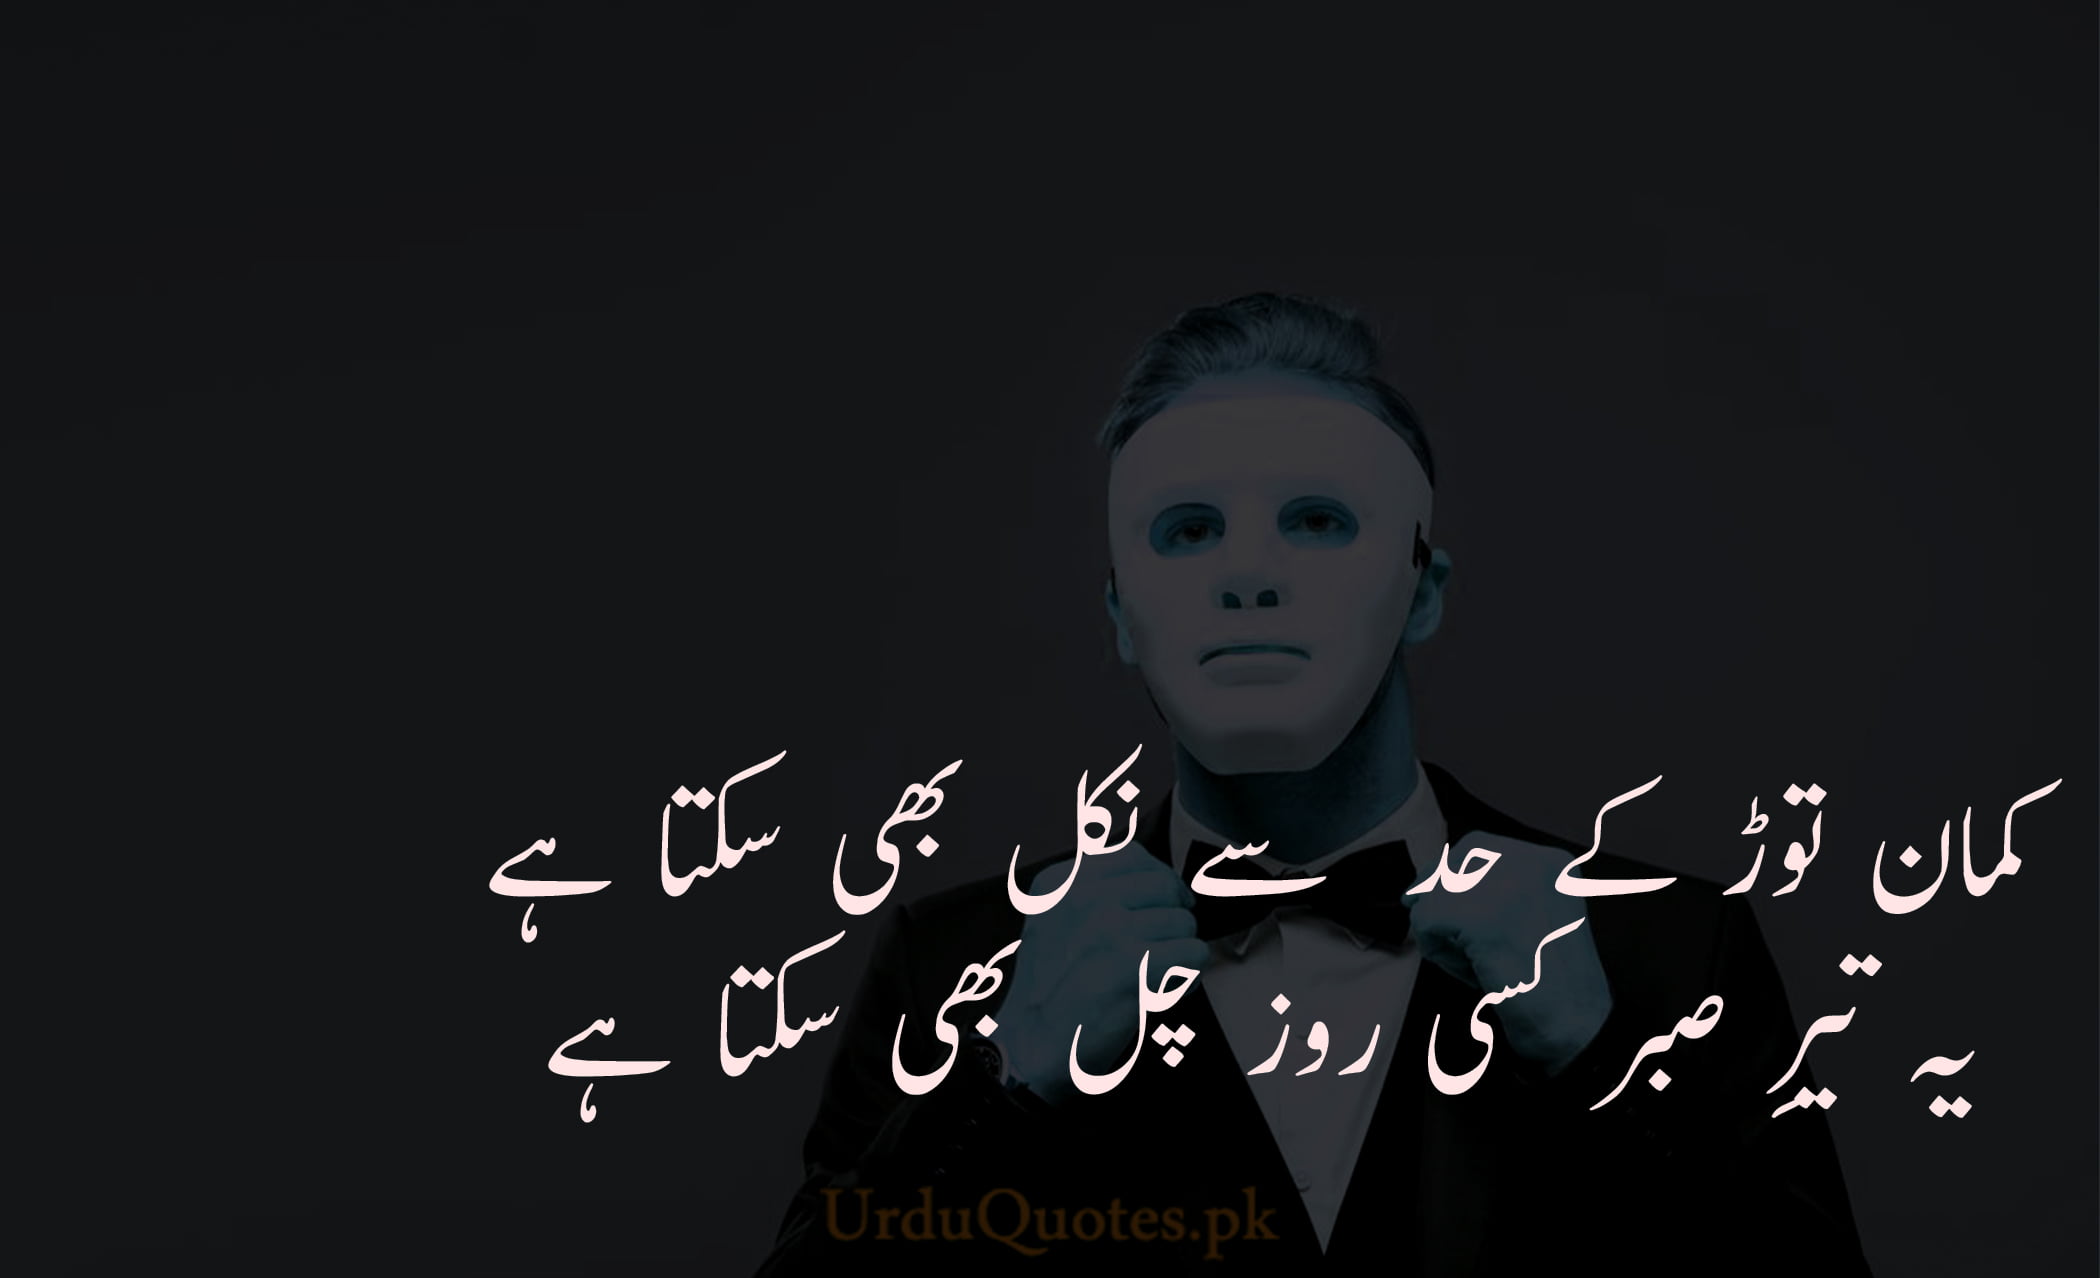 Munafiq Quotes & Poetry in Urdu